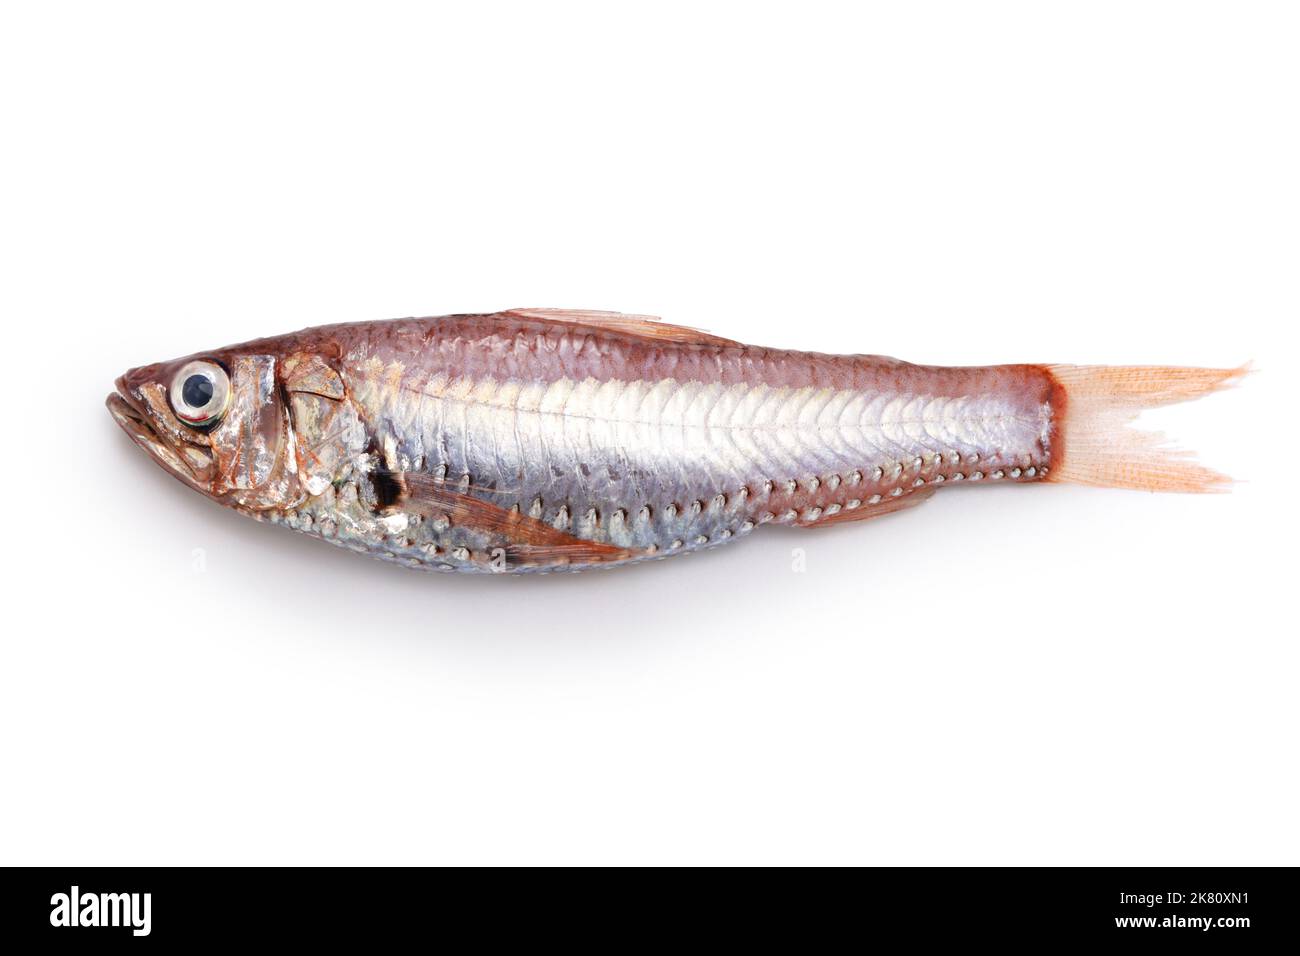 Deliciosos peces de aguas profundas que aún no son famosos (Neoscopelus microchir Matsubara) aislados sobre fondo blanco Foto de stock